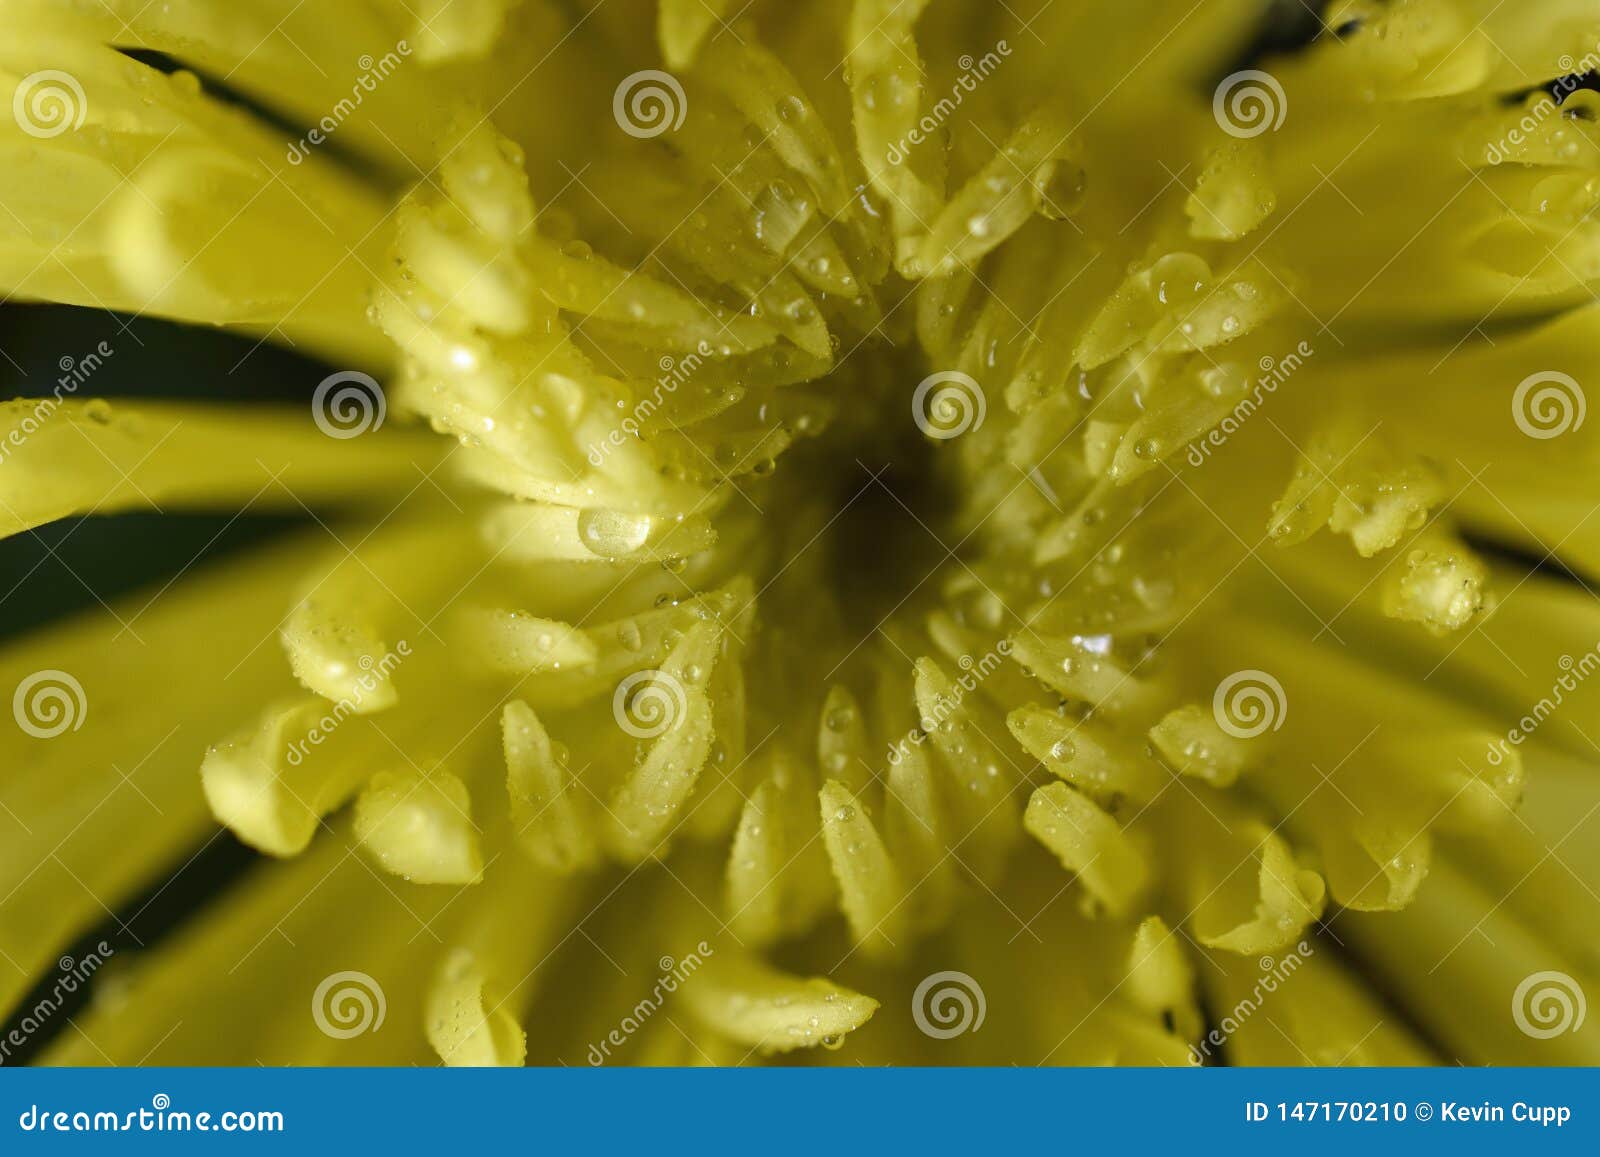 chrysanthemum flower after a warm rain